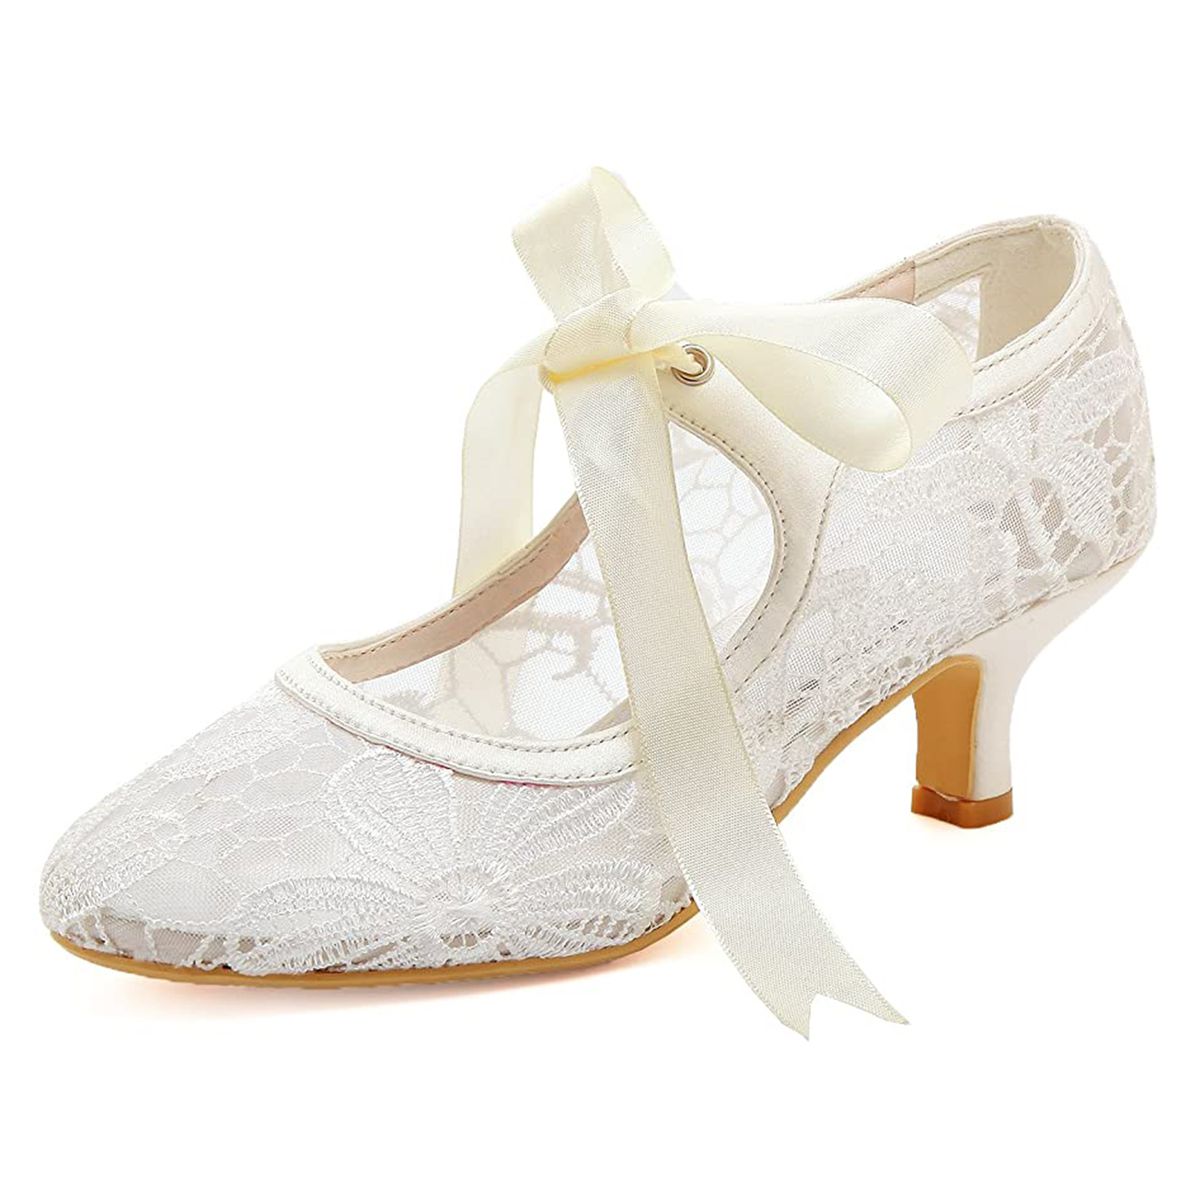 Bridal Shoes on Amazon